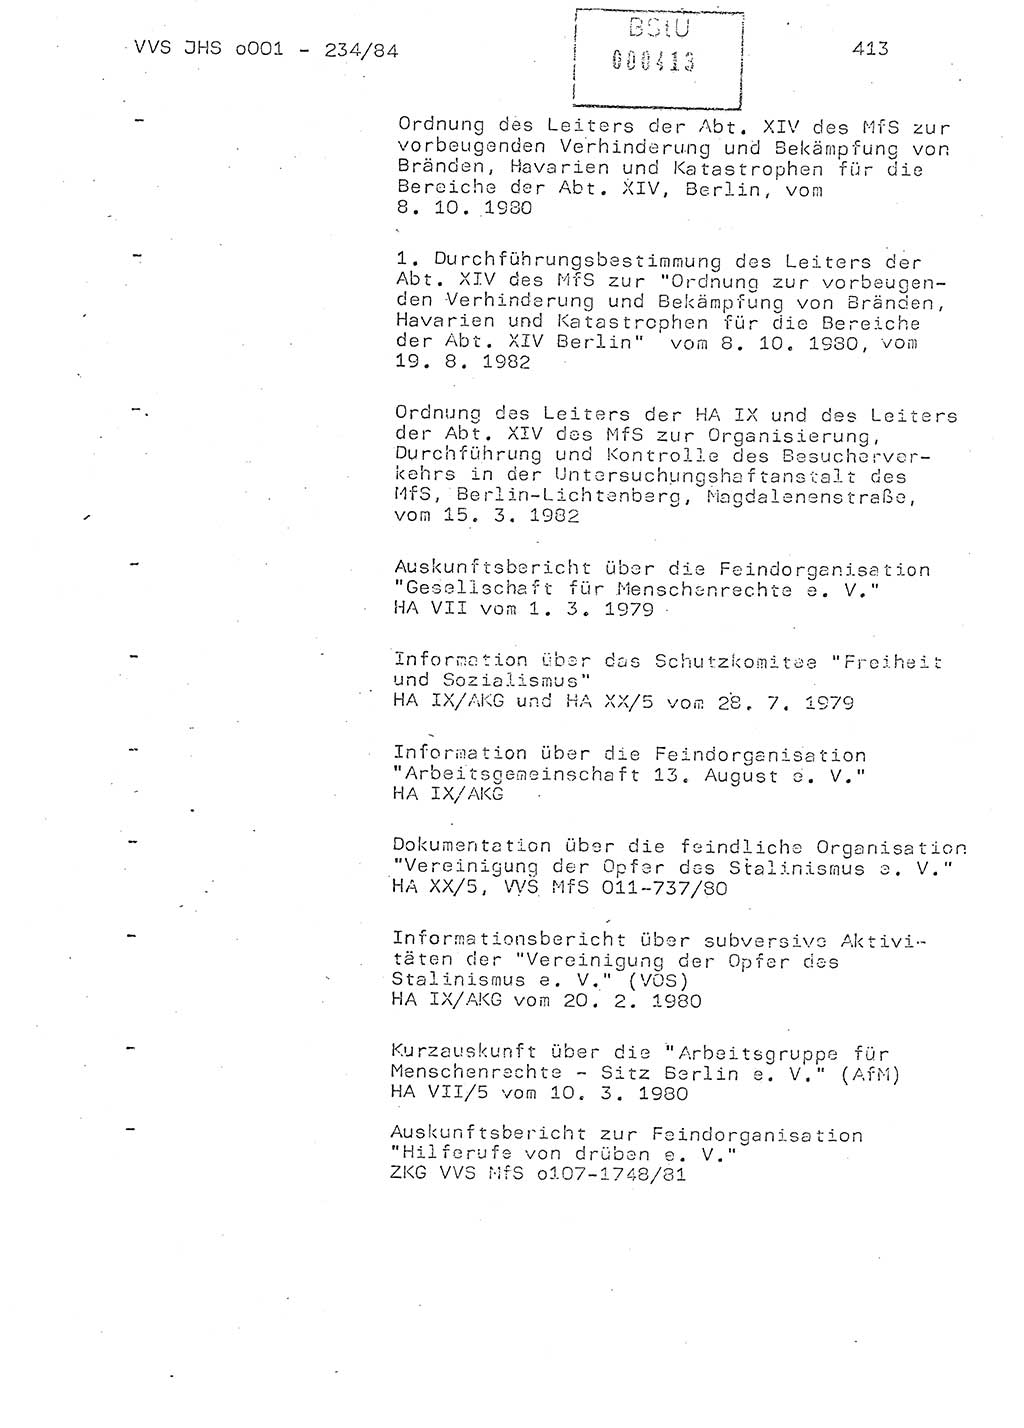 Dissertation Oberst Siegfried Rataizick (Abt. ⅩⅣ), Oberstleutnant Volkmar Heinz (Abt. ⅩⅣ), Oberstleutnant Werner Stein (HA Ⅸ), Hauptmann Heinz Conrad (JHS), Ministerium für Staatssicherheit (MfS) [Deutsche Demokratische Republik (DDR)], Juristische Hochschule (JHS), Vertrauliche Verschlußsache (VVS) o001-234/84, Potsdam 1984, Seite 413 (Diss. MfS DDR JHS VVS o001-234/84 1984, S. 413)